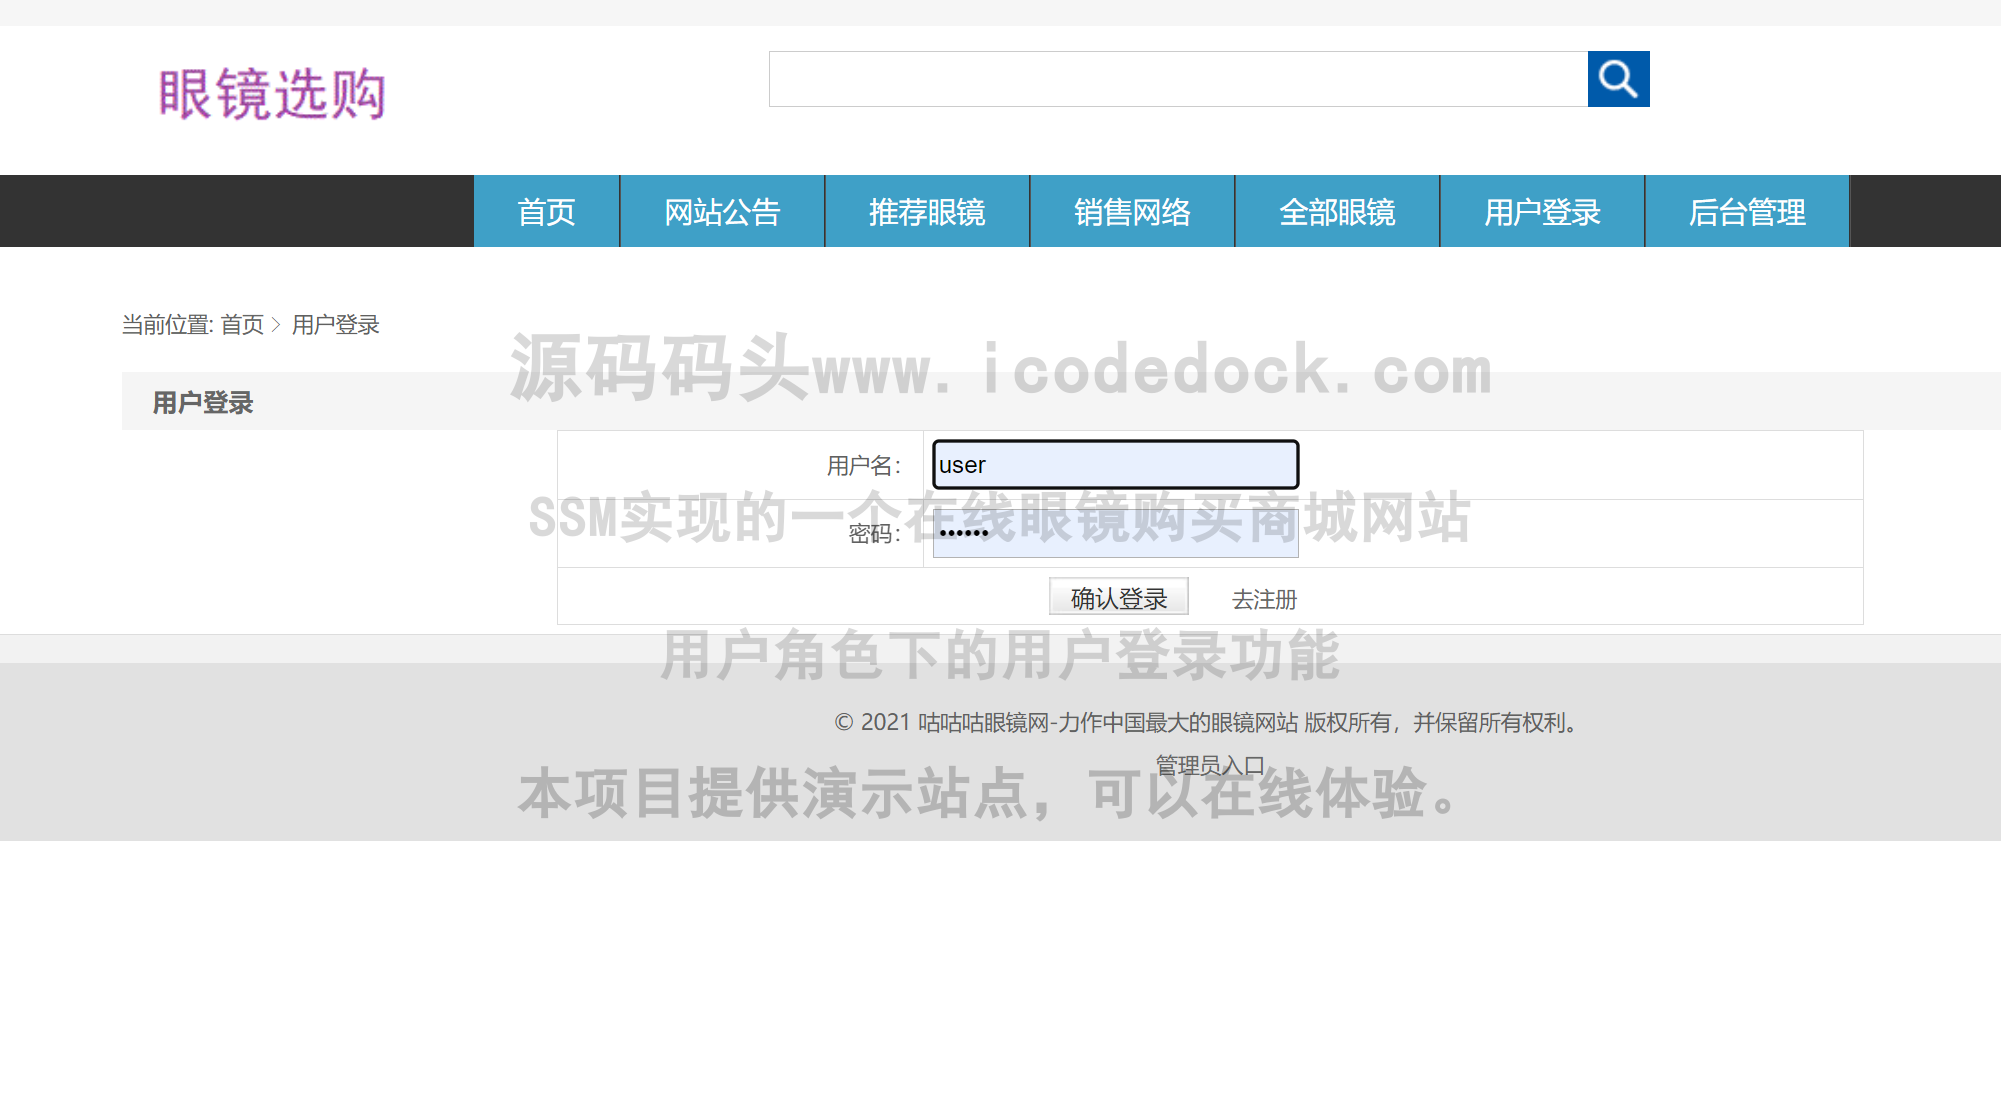 源码码头-SSM实现的一个在线眼镜购买商城网站-用户角色-用户登录